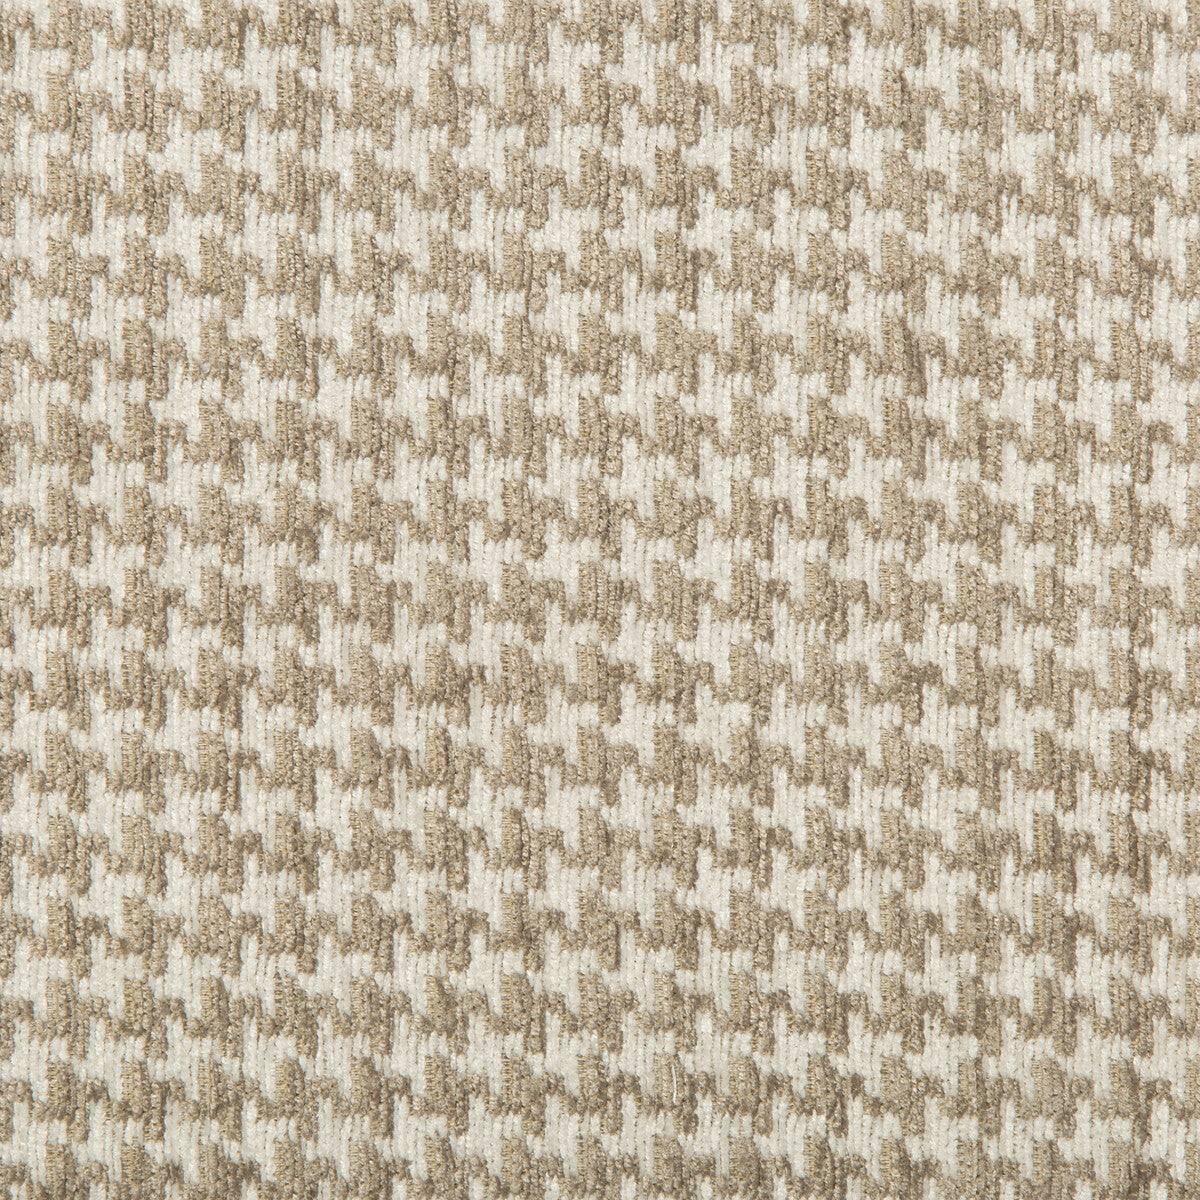 Kravet Design fabric in 35693-16 color - pattern 35693.16.0 - by Kravet Design